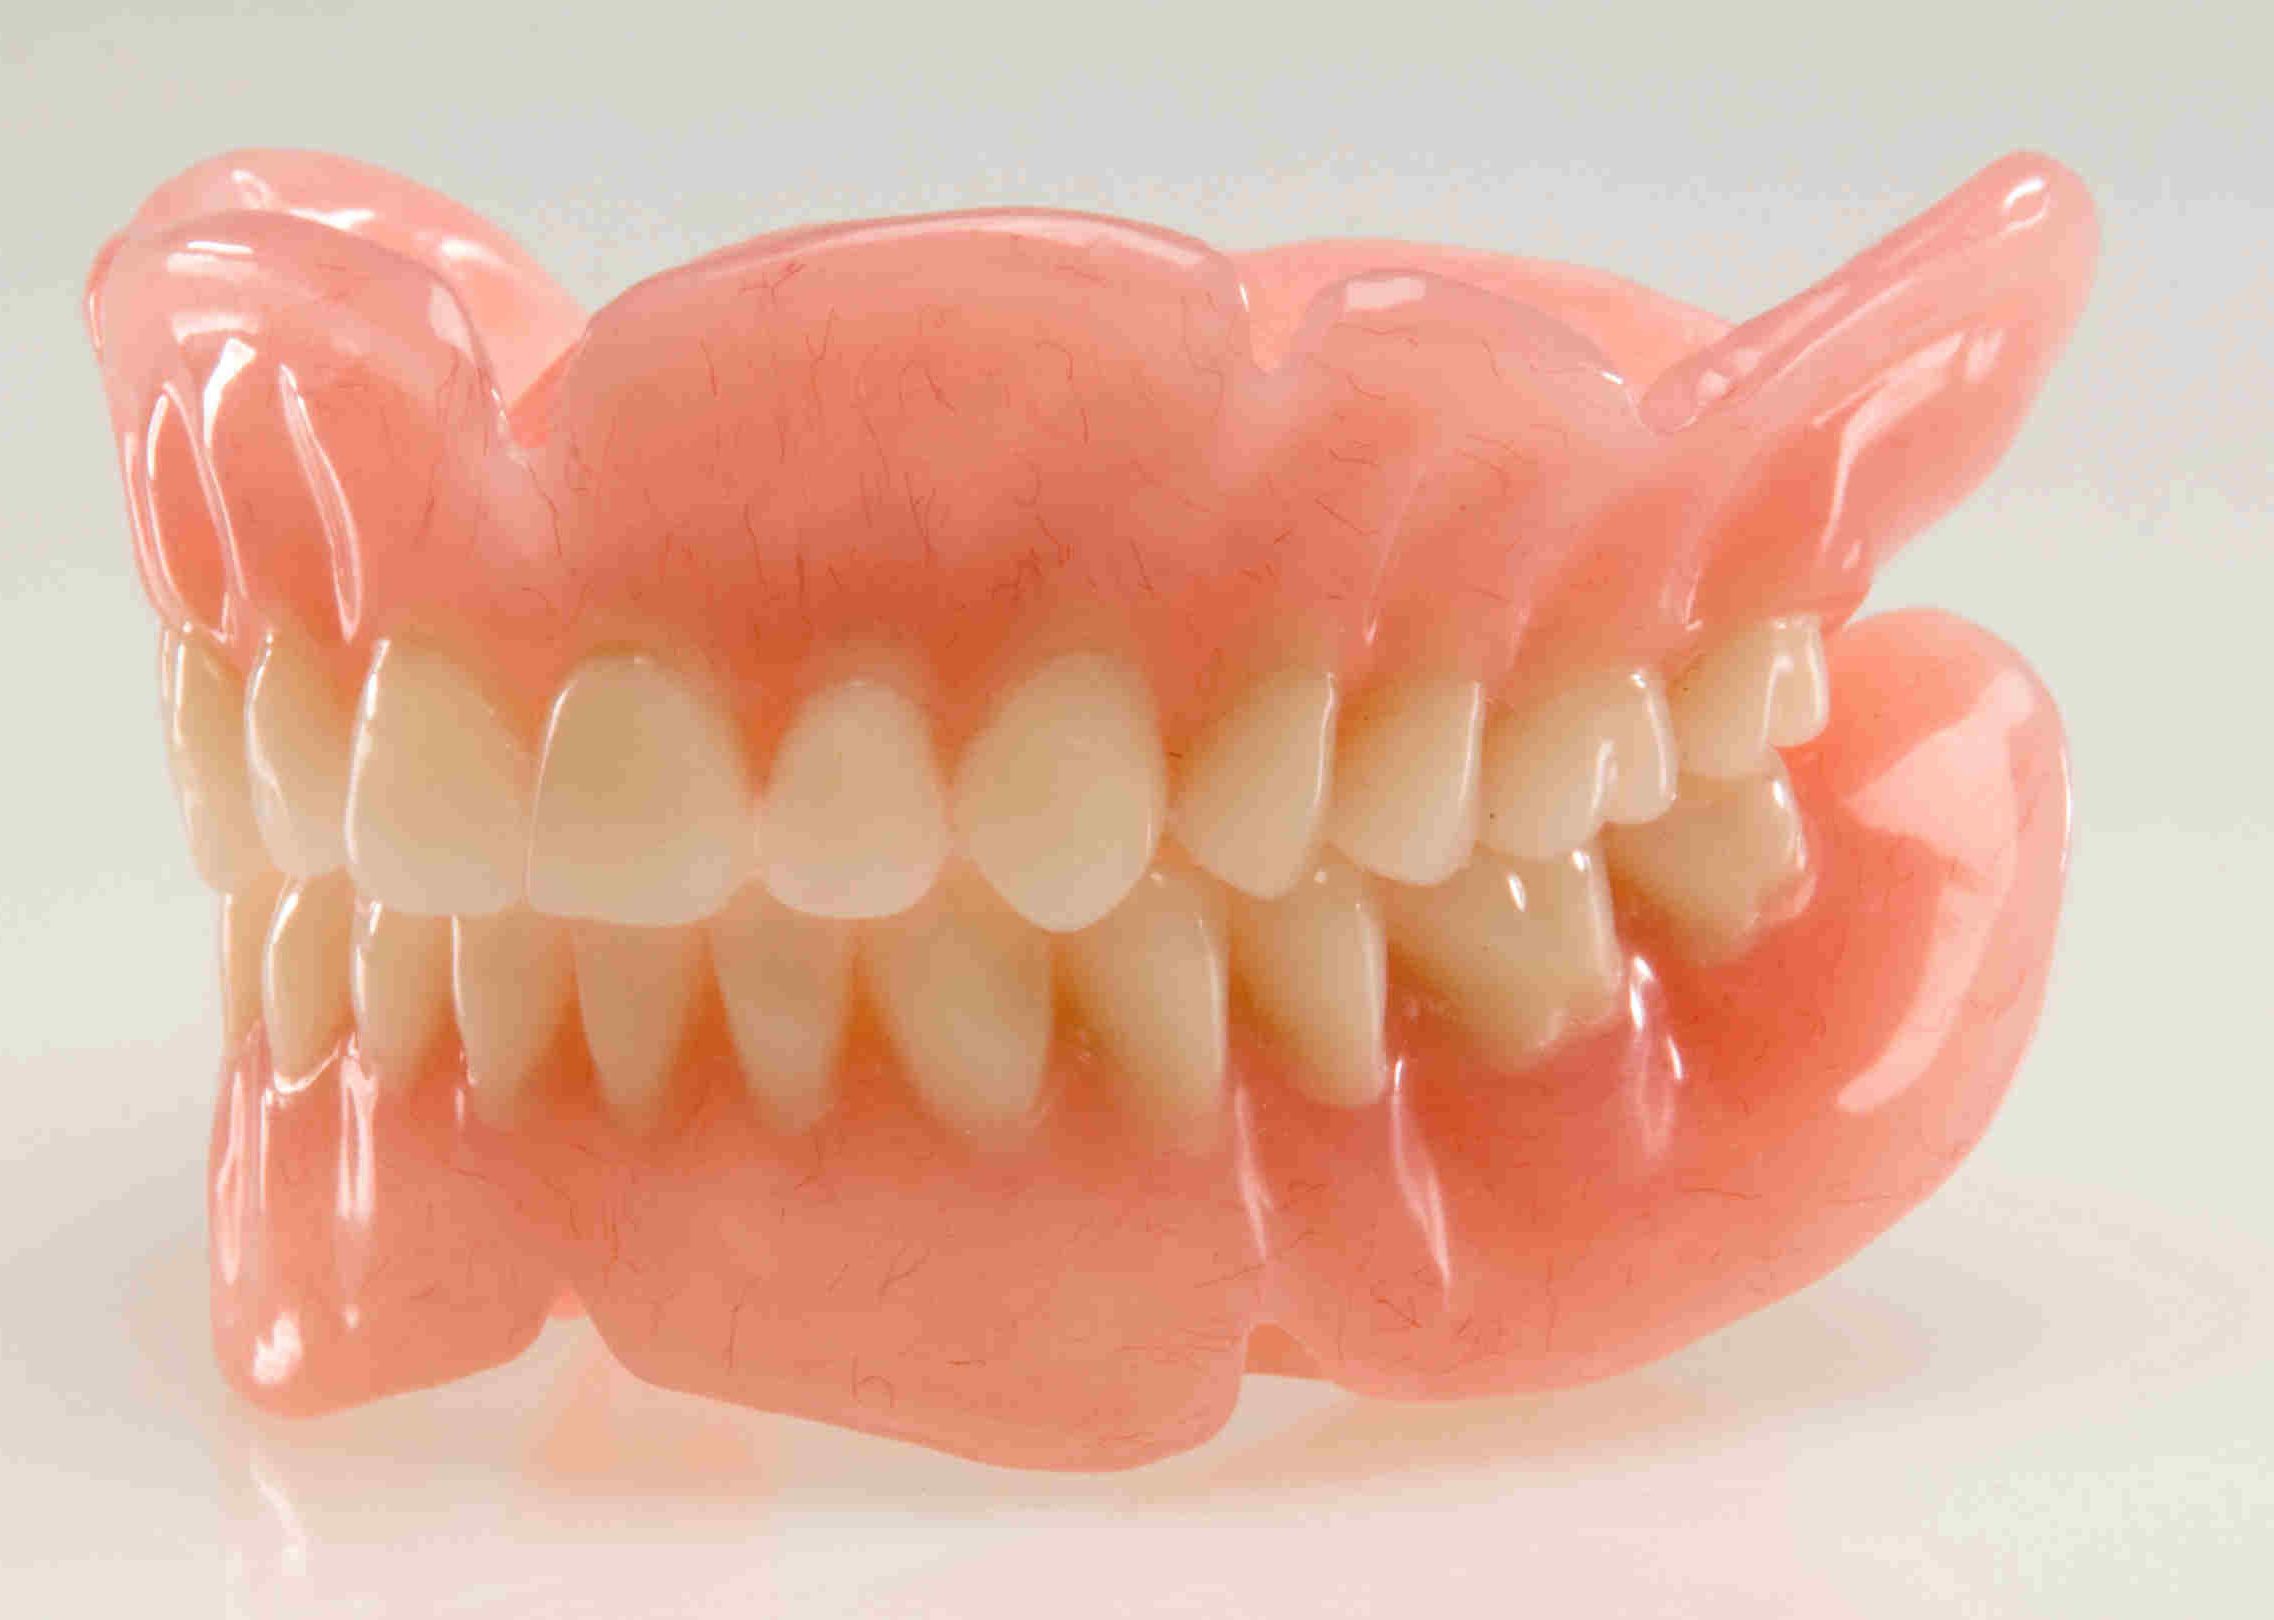 Съемные зубные протезы в Москве — Стоматология «Все свои!» — официальный сайт